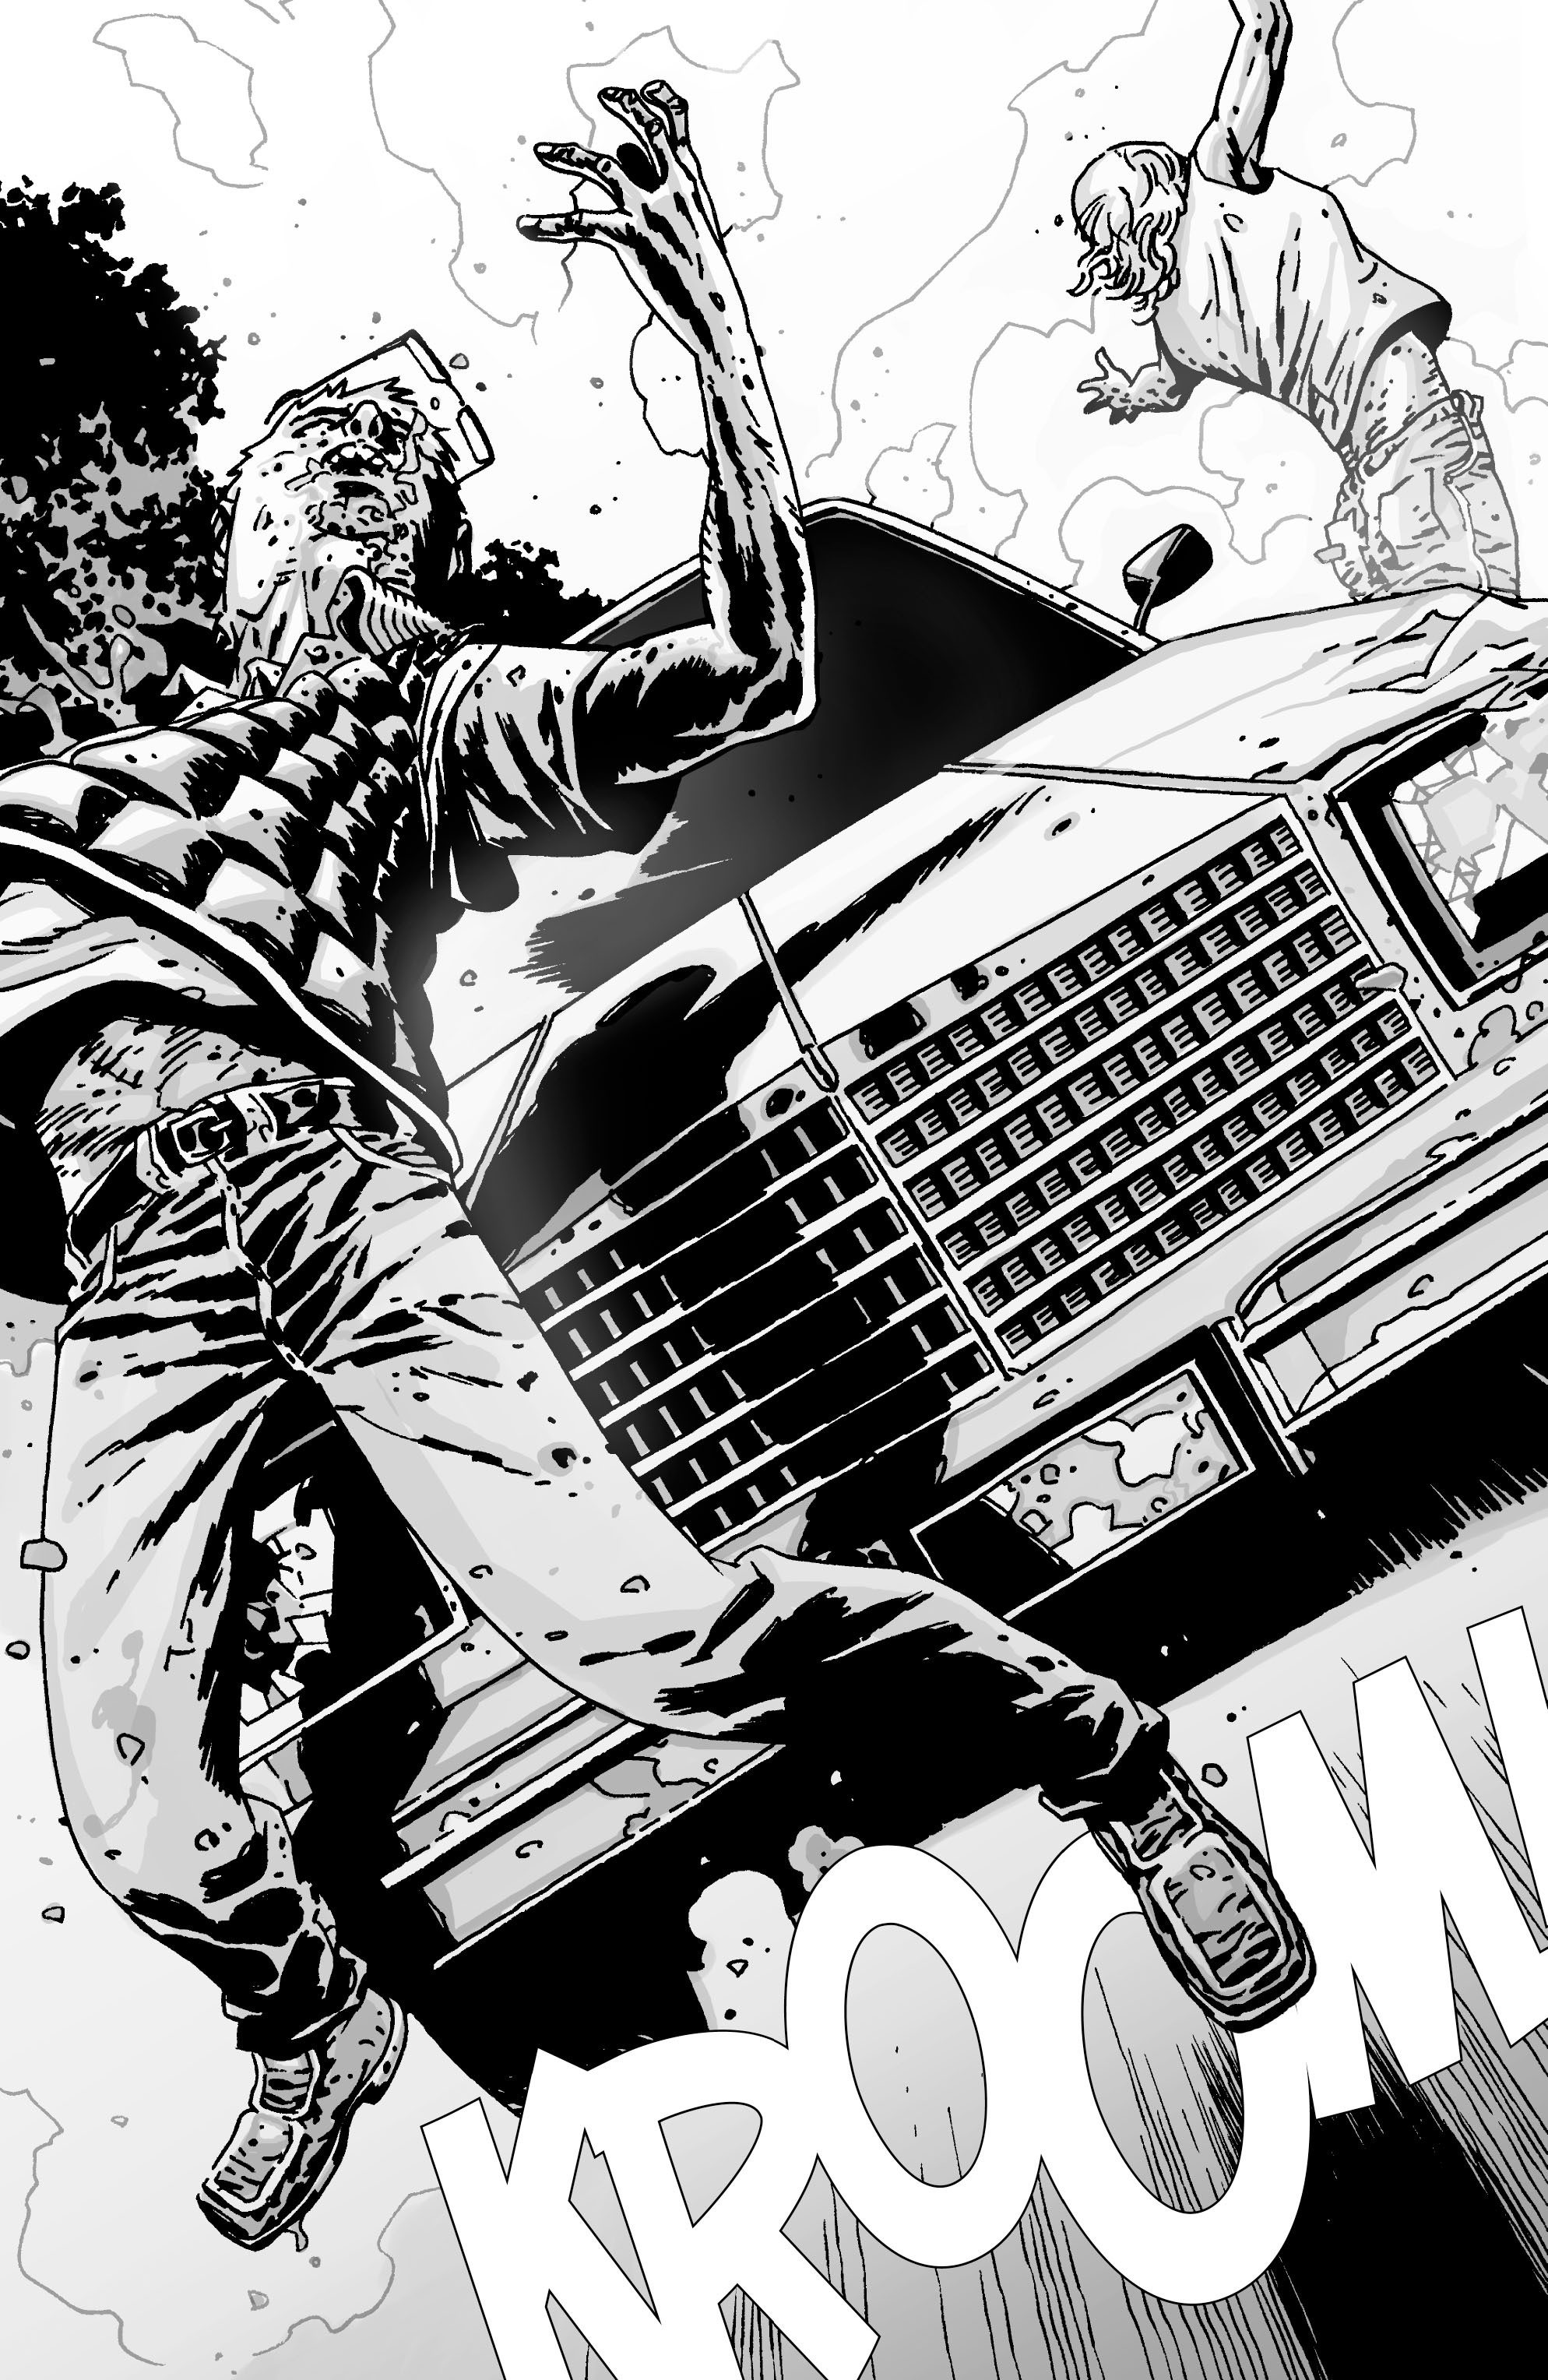 Read online The Walking Dead comic -  Issue #52 - 4